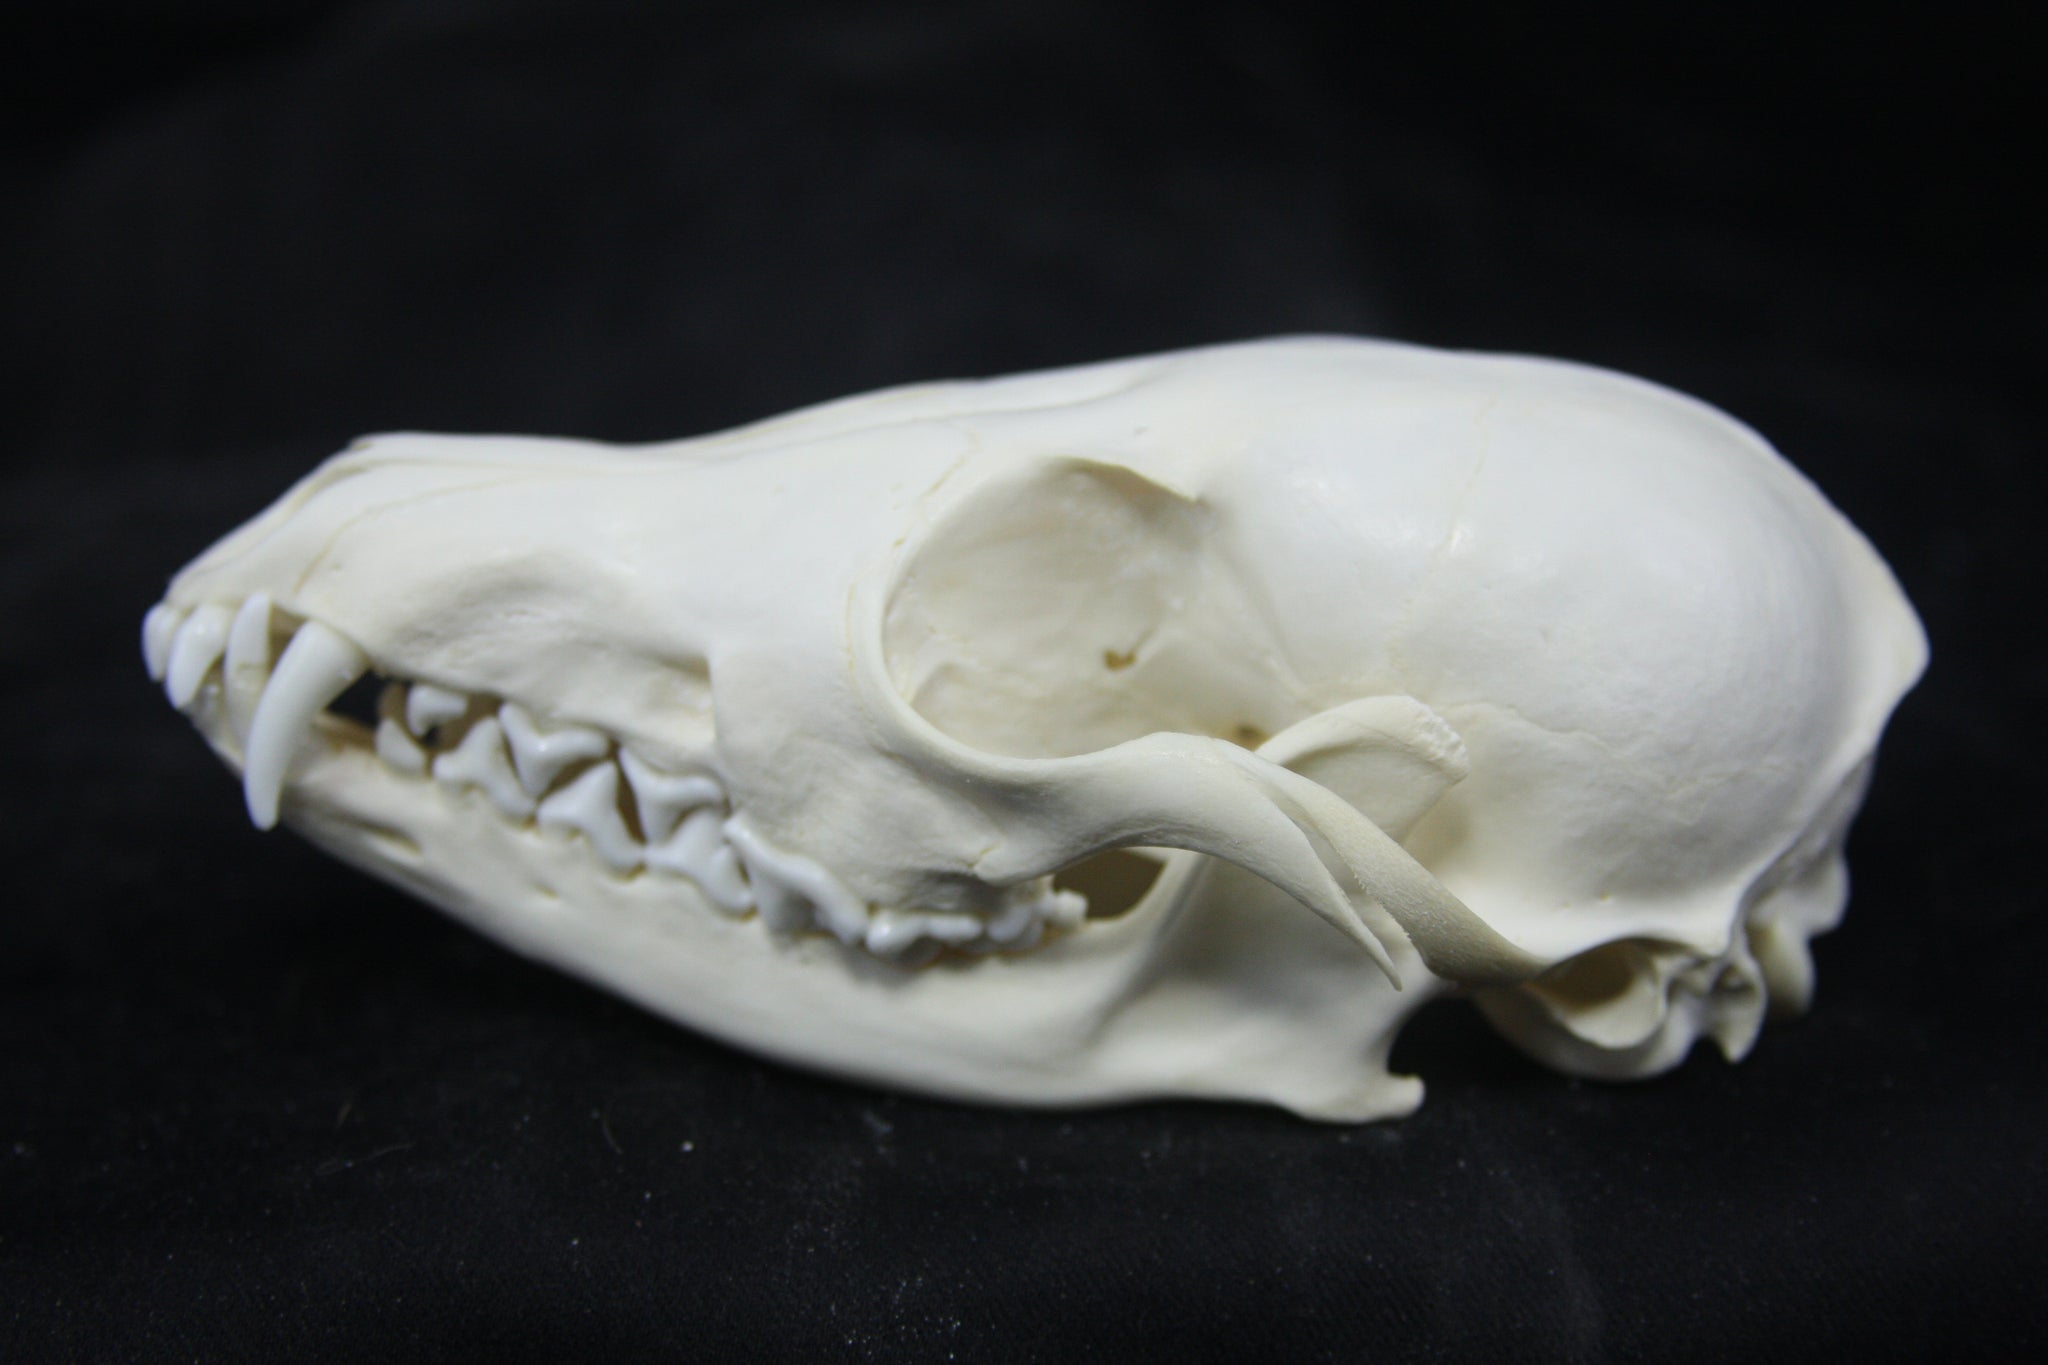 Juvenile Red Fox Skull